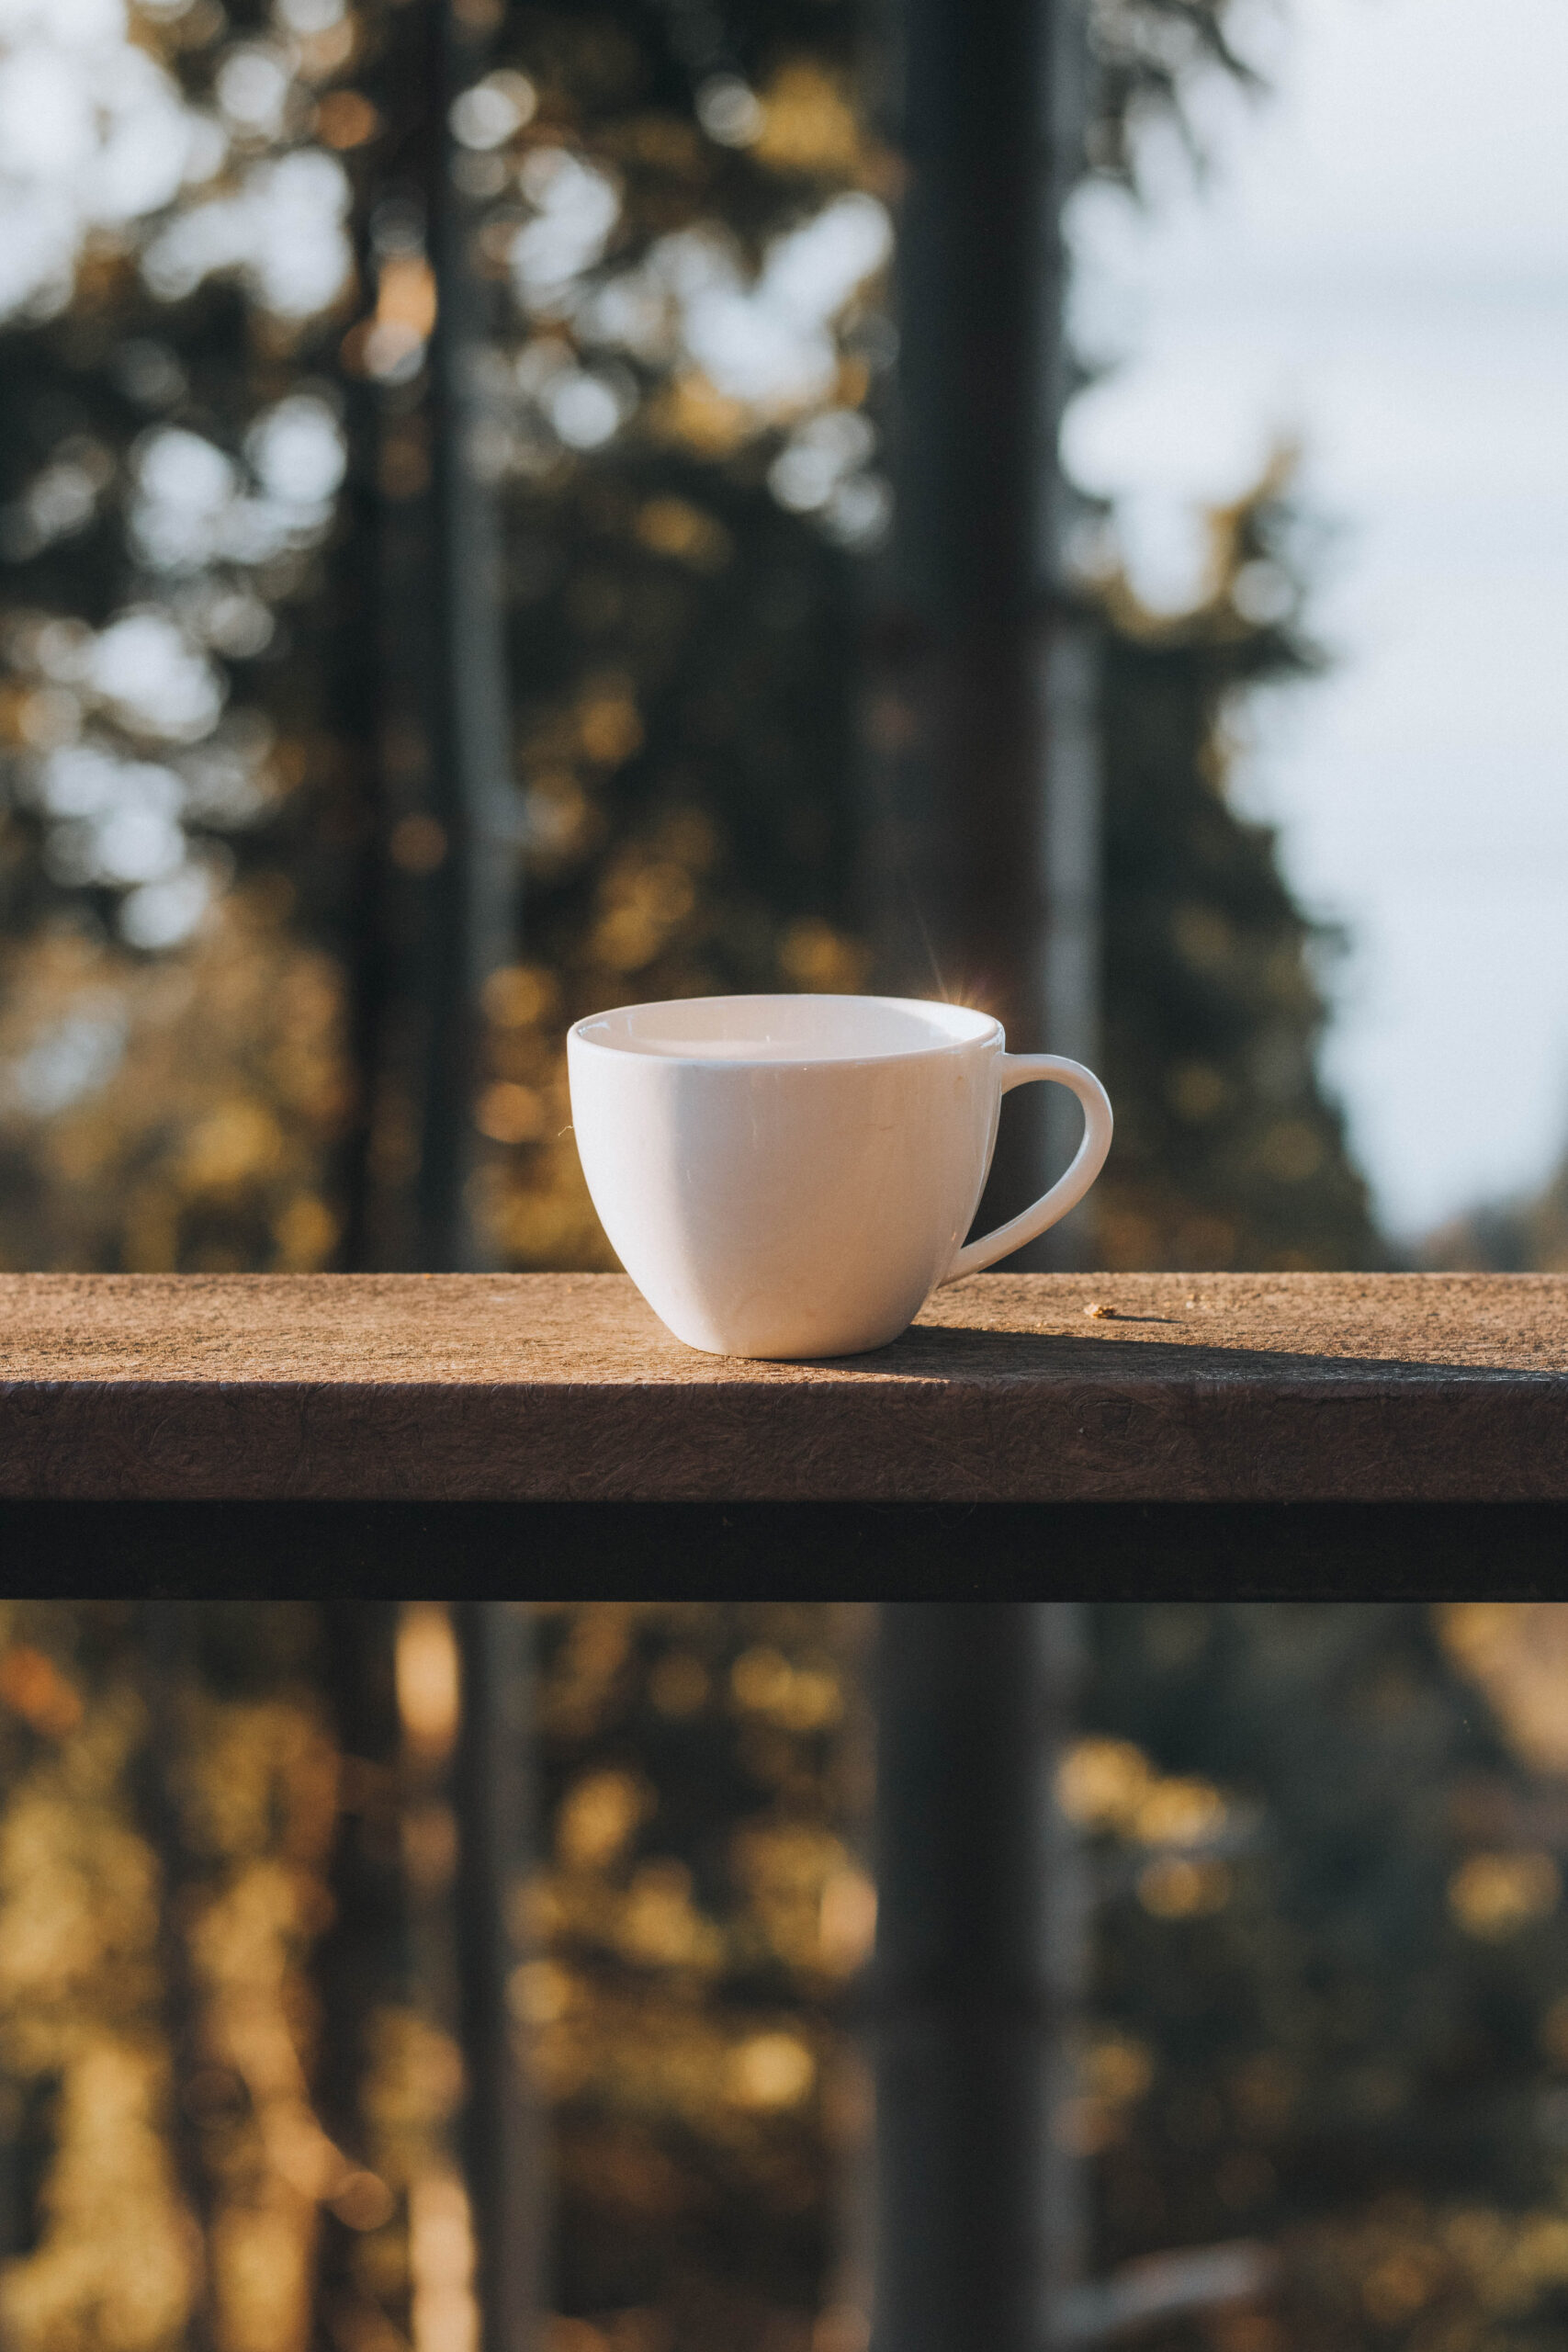 coffee cup on balcony railing